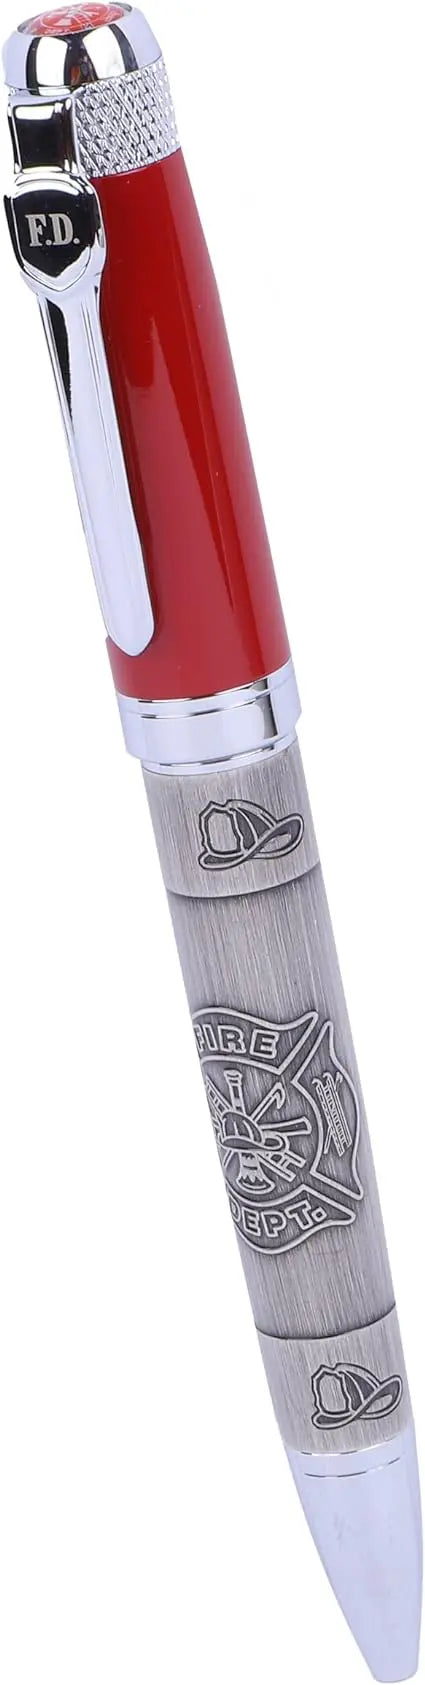 Firefighter Red Cap Pen Officially Licensed Ballpoint Pen Trendy Zone 21